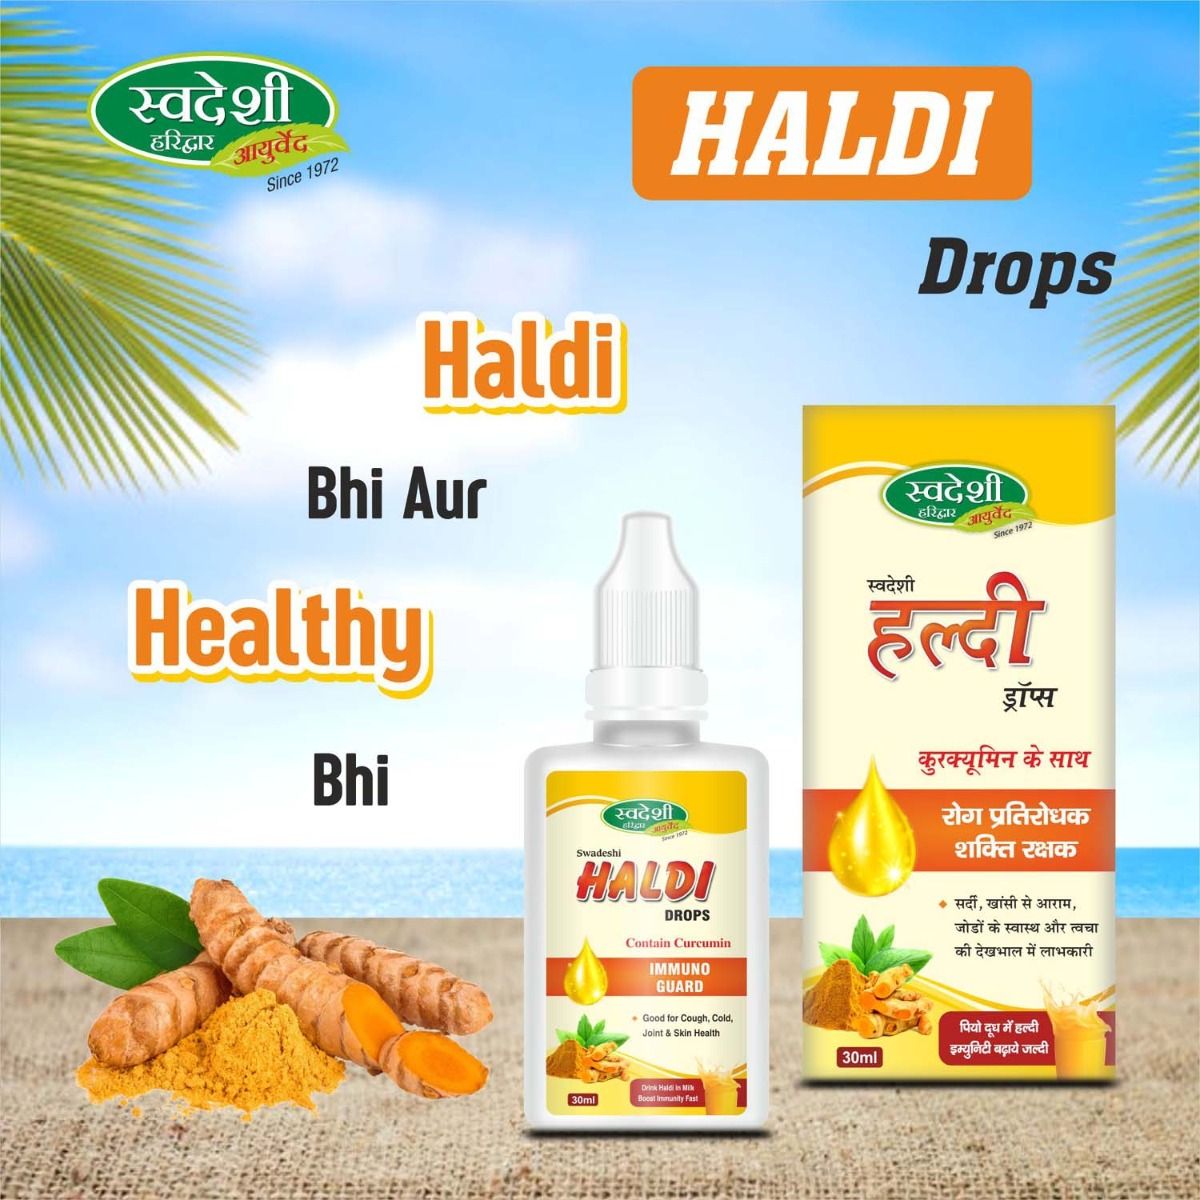 Swadeshi Haldi Drops, 30 ml, Pack of 1 